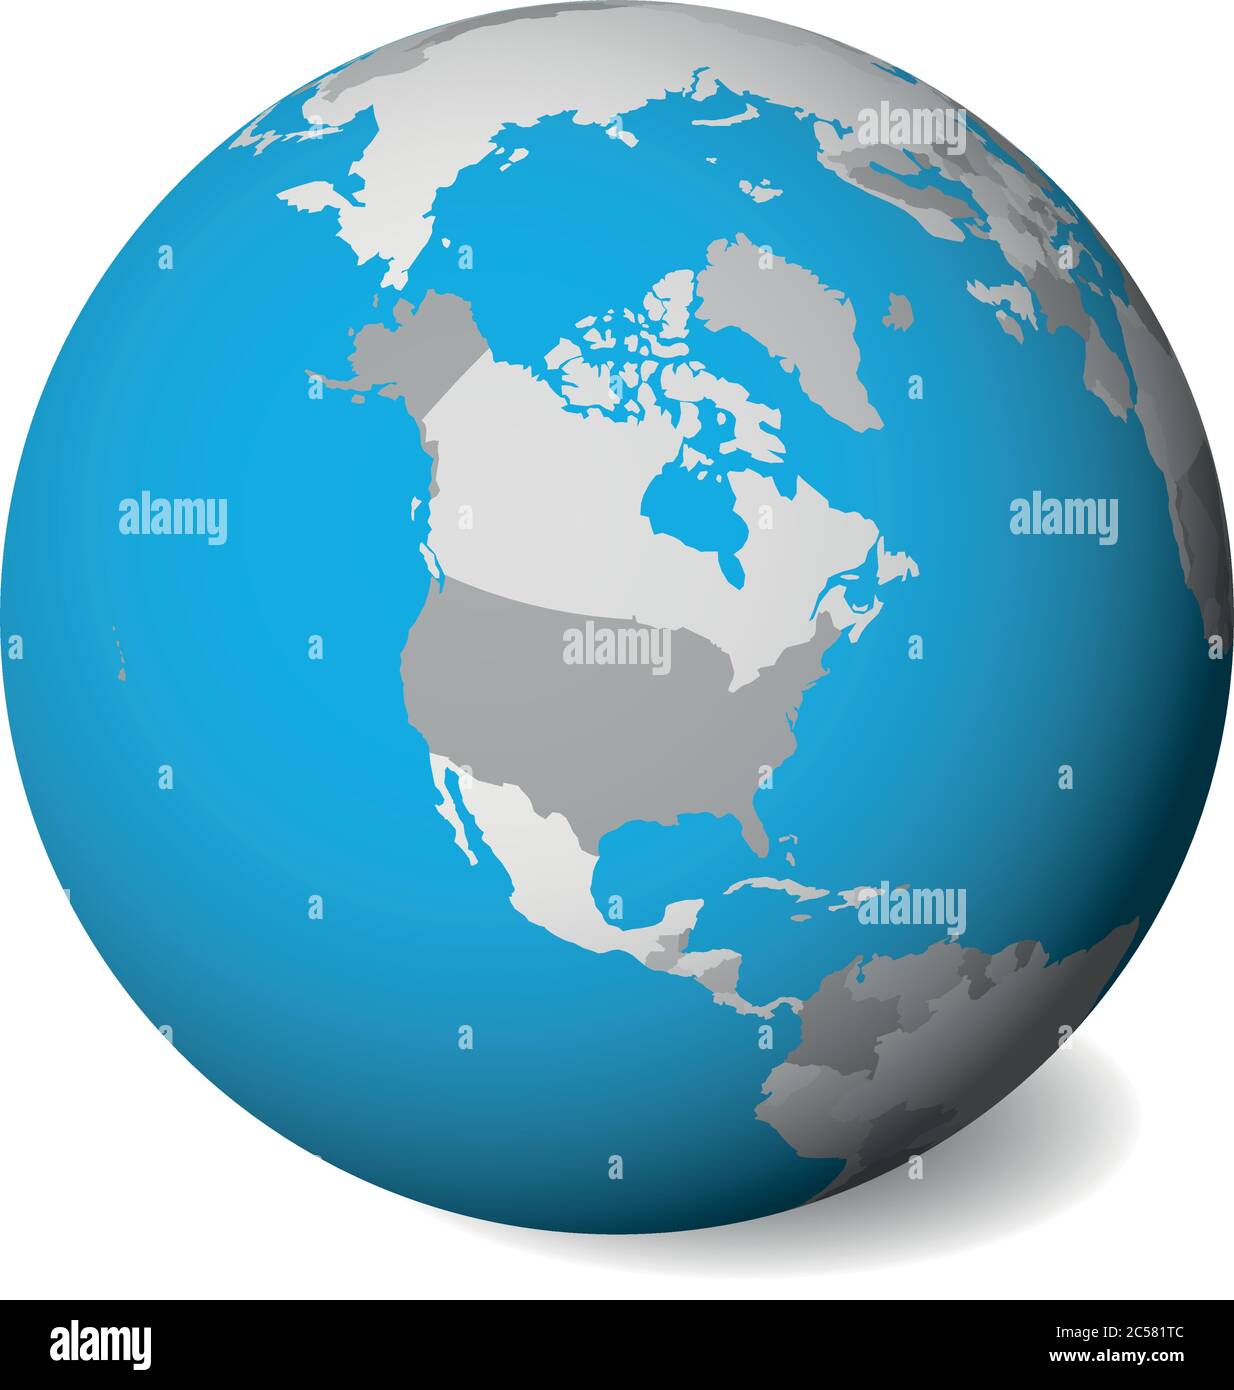 Mapa Político En Blanco De América Del Norte Globo Terráqueo 3d Con Aguas Azules Y Tierras 6723